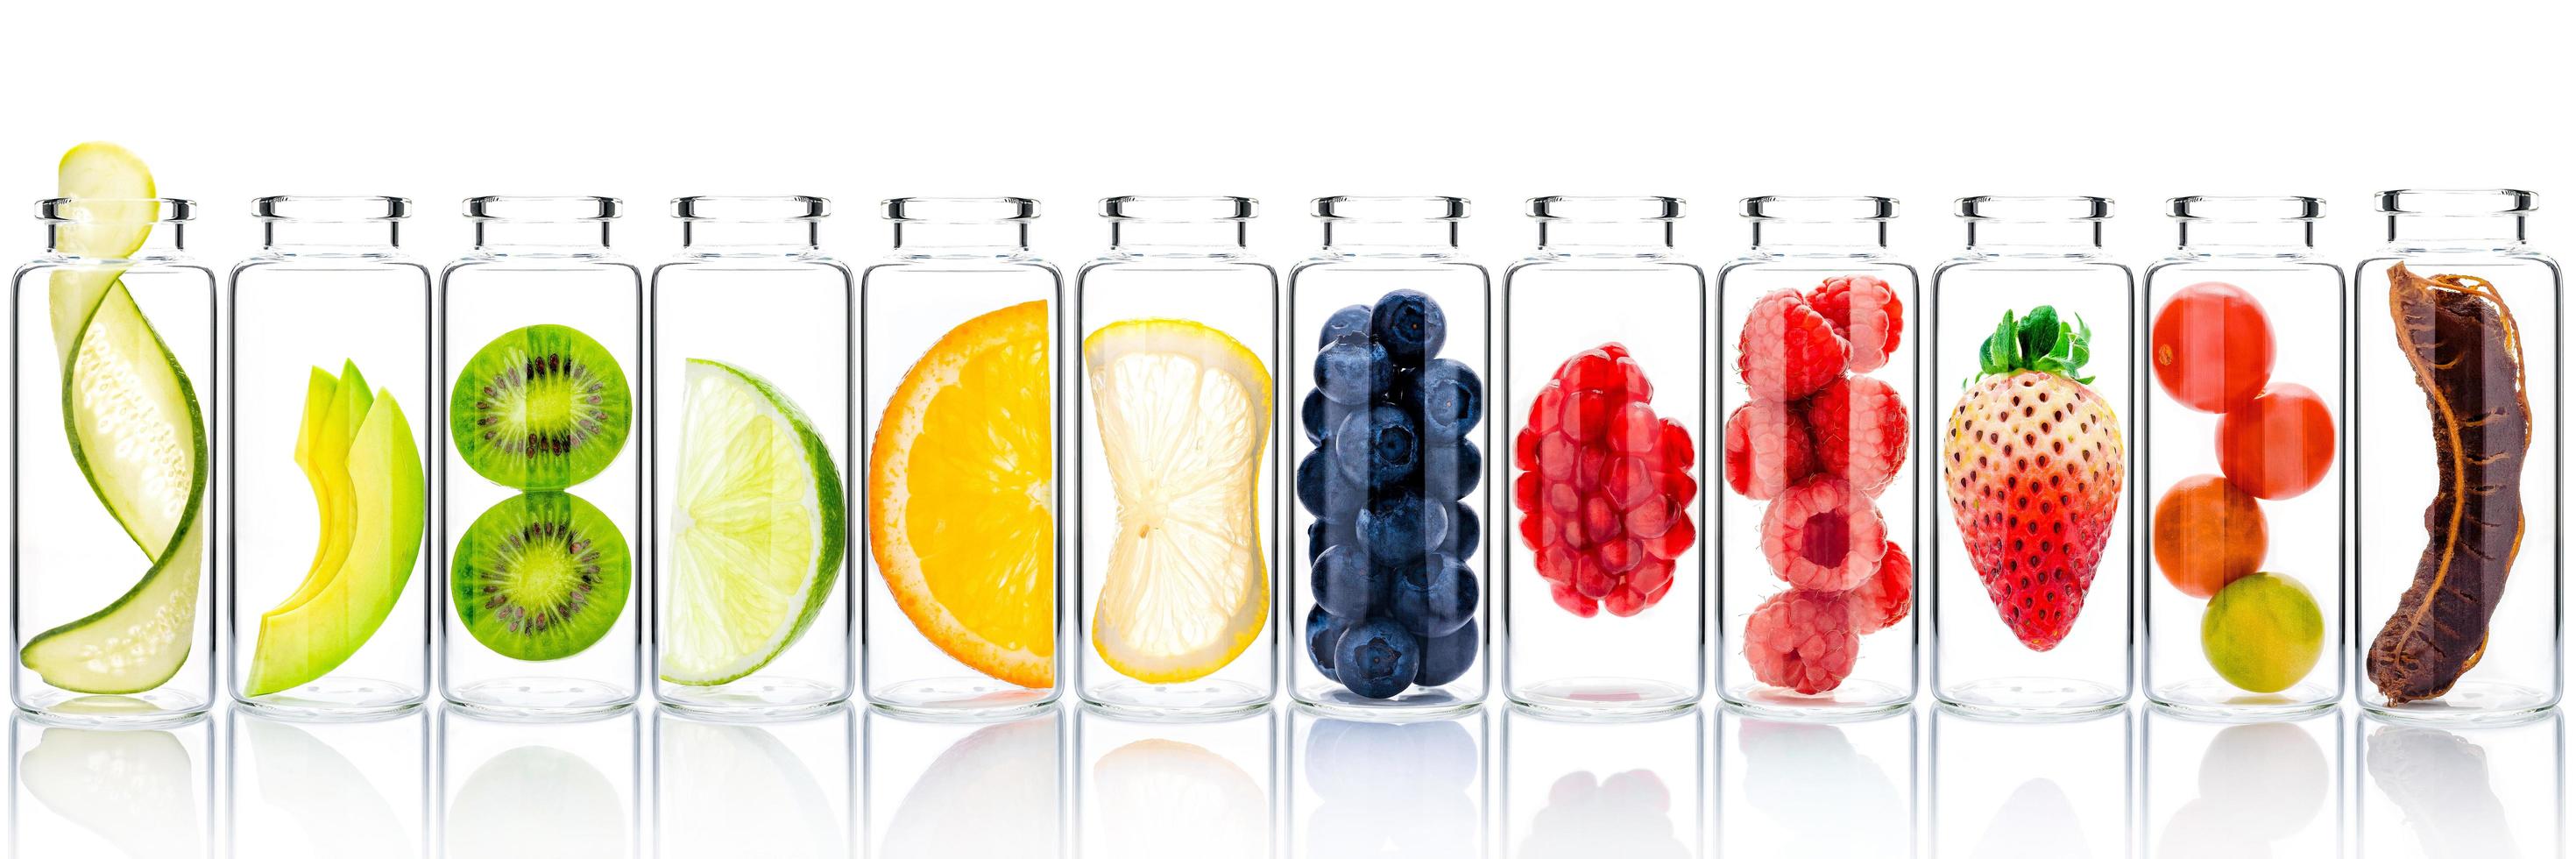 Cuidado de la piel casero con ingredientes de frutas de aguacate, naranja, arándano, granada, kiwi, limón, pepino, tamarindo, fresa y frambuesa en botellas de vidrio aisladas sobre fondo blanco. foto